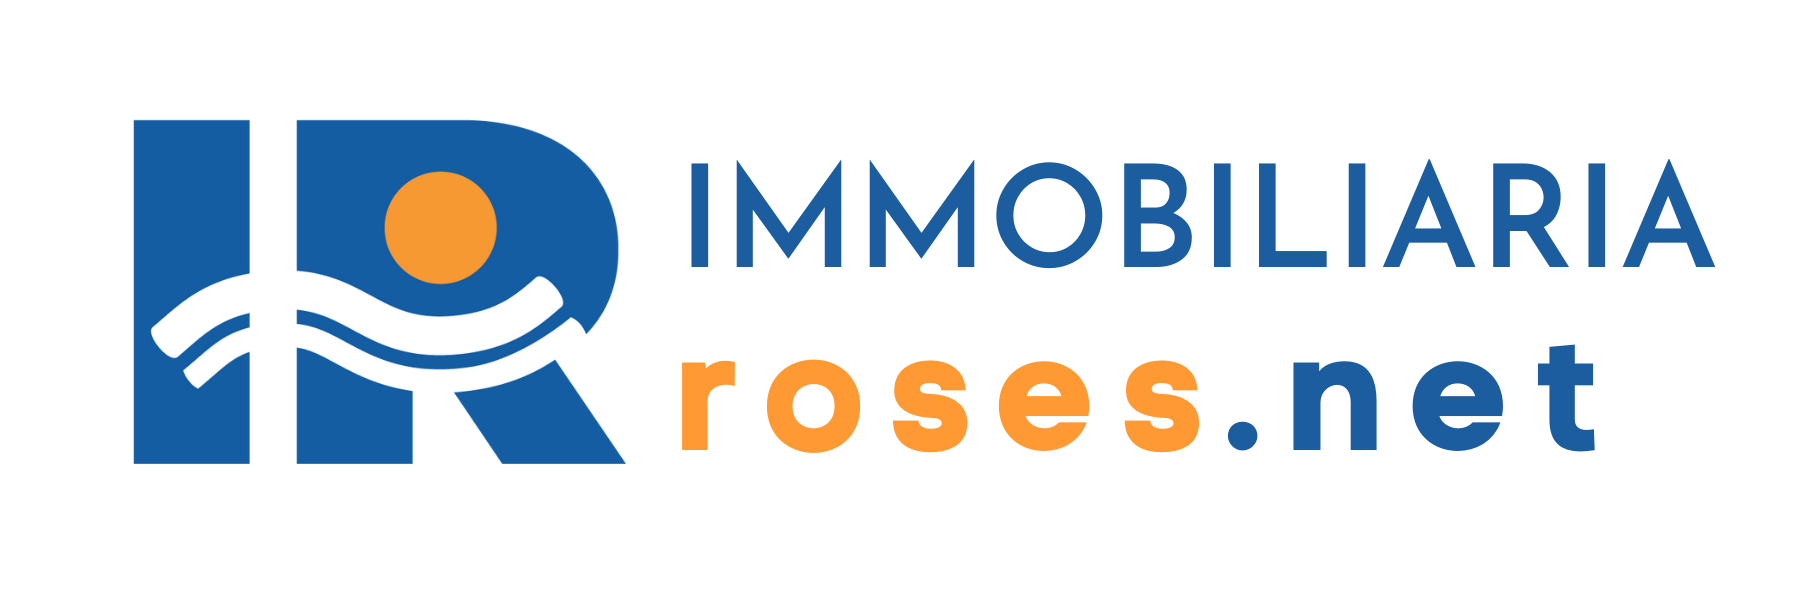 Inmobiliaria Immo Roses.net - Alquiler Anual Costa Brava